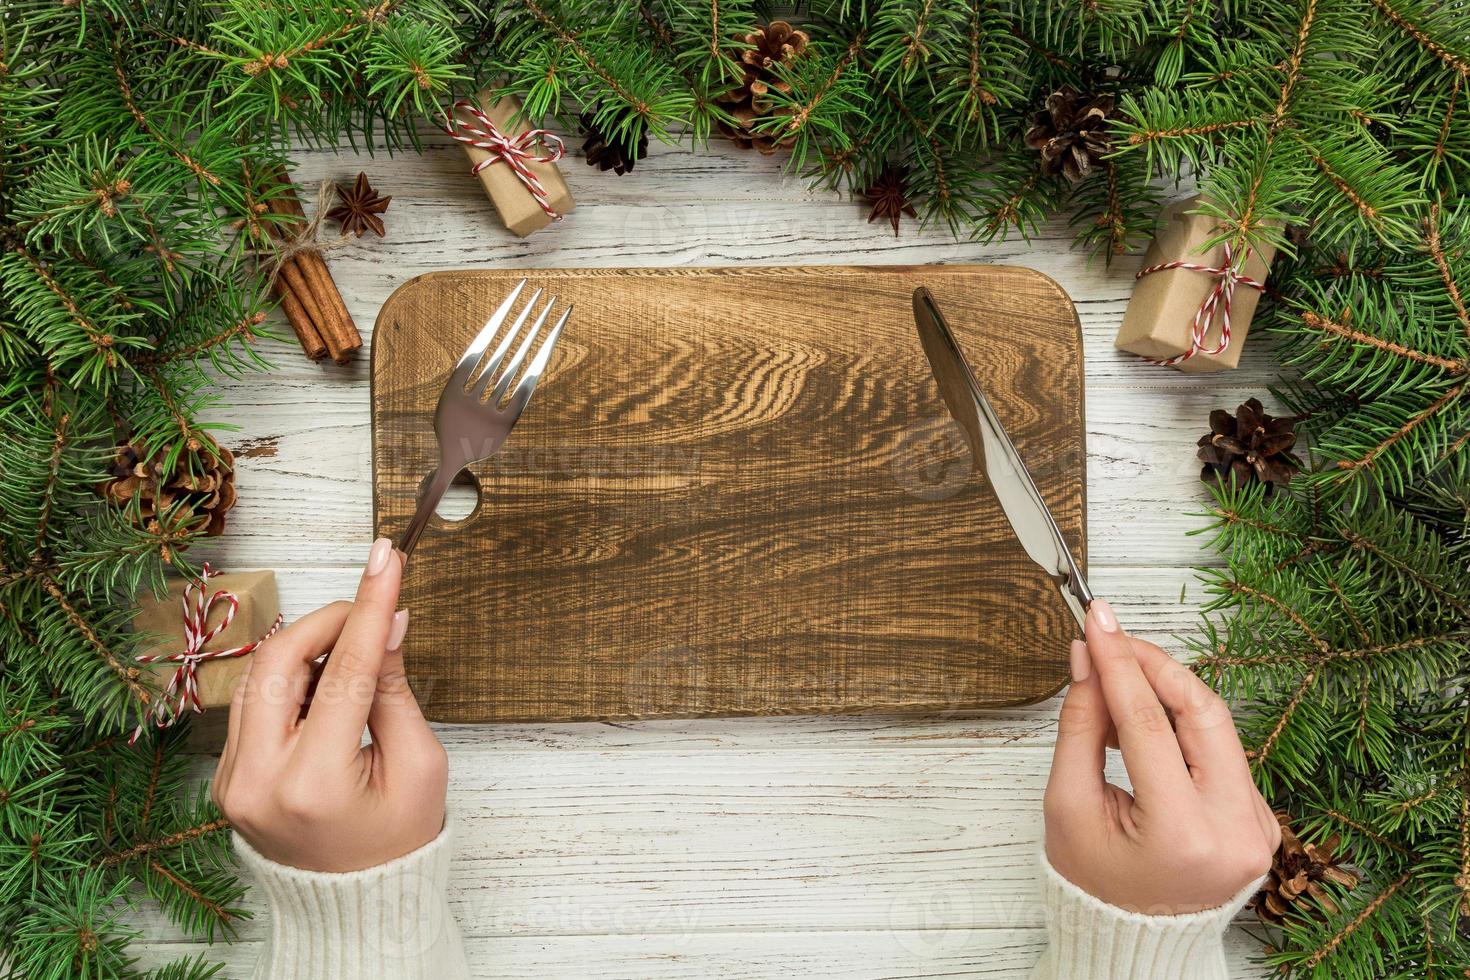 topp se flicka innehar gaffel och kniv i hand och är redo till äta. tömma trä rektangulär tallrik på trä- jul bakgrund. Semester middag maträtt begrepp med ny år dekor foto